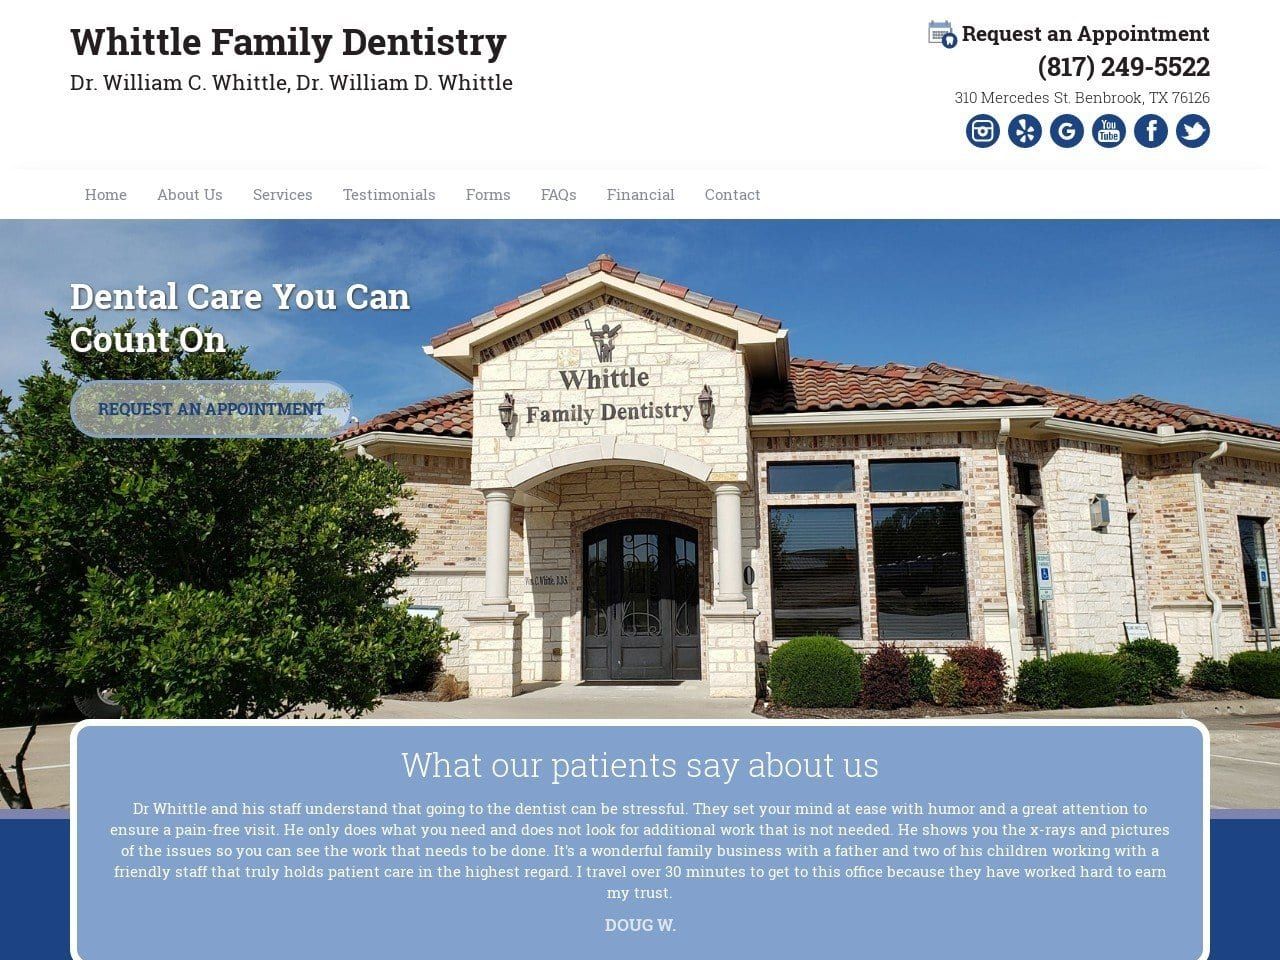 Whittle Family Dentist Website Screenshot from whittledentistry.com